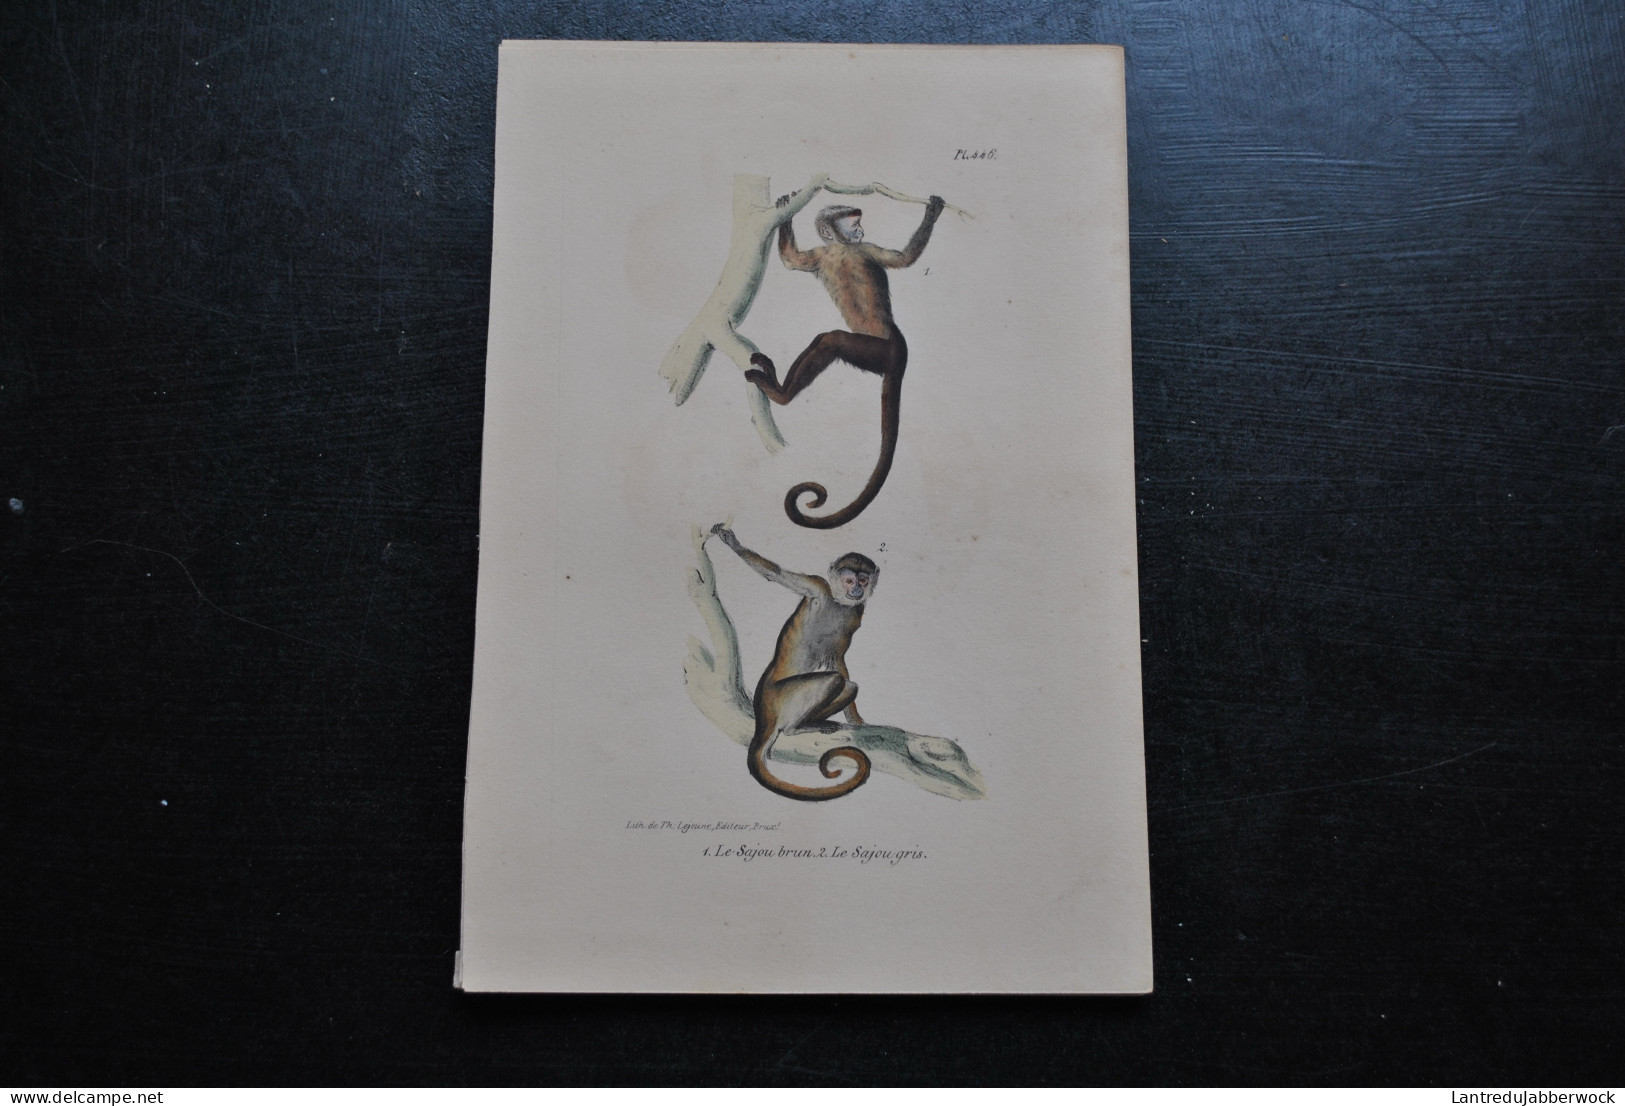 Gravure Couleurs (23 X 16 Cm) Buffon Sajou Brun Et Gris Primate Singe Cabinet De Curiosités Lejeune Bruxelles 1833 - Stampe & Incisioni